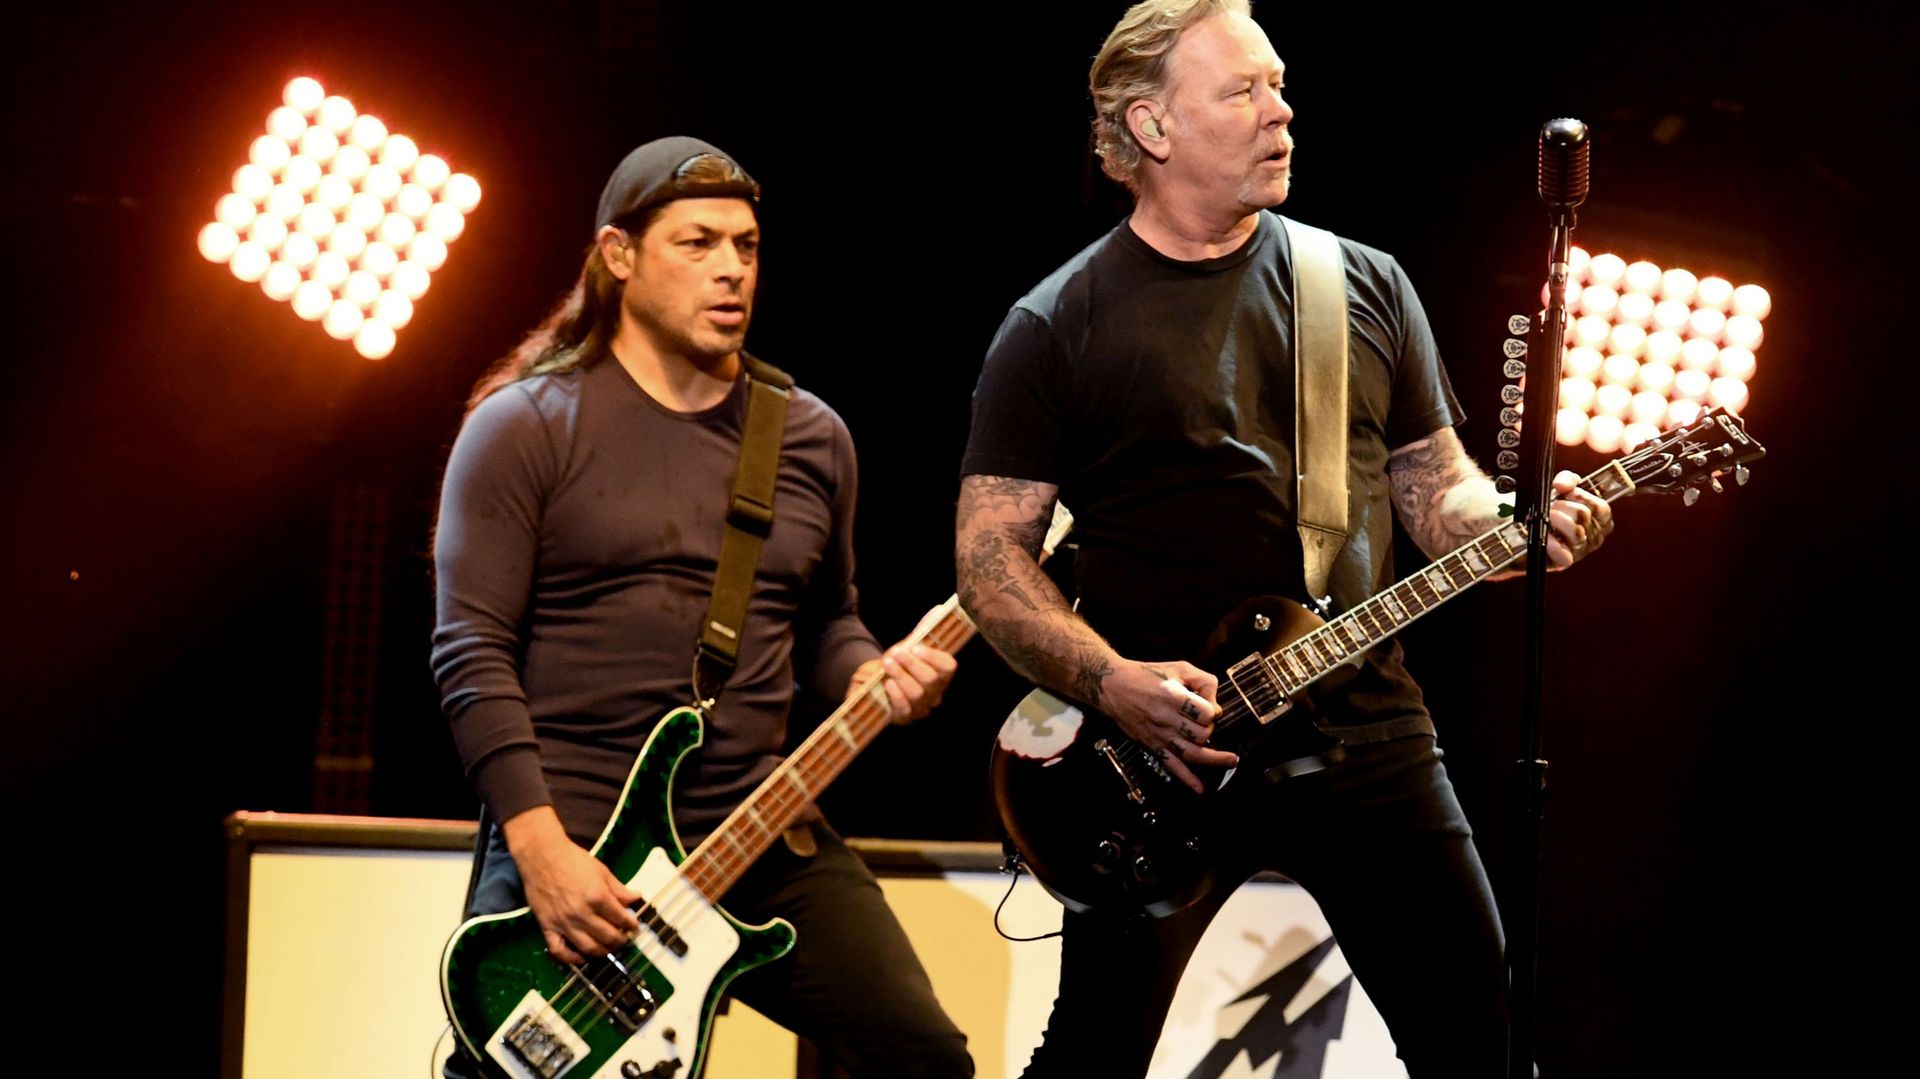 Ce soir, allez voir Metallica à Paris… depuis chez vous !